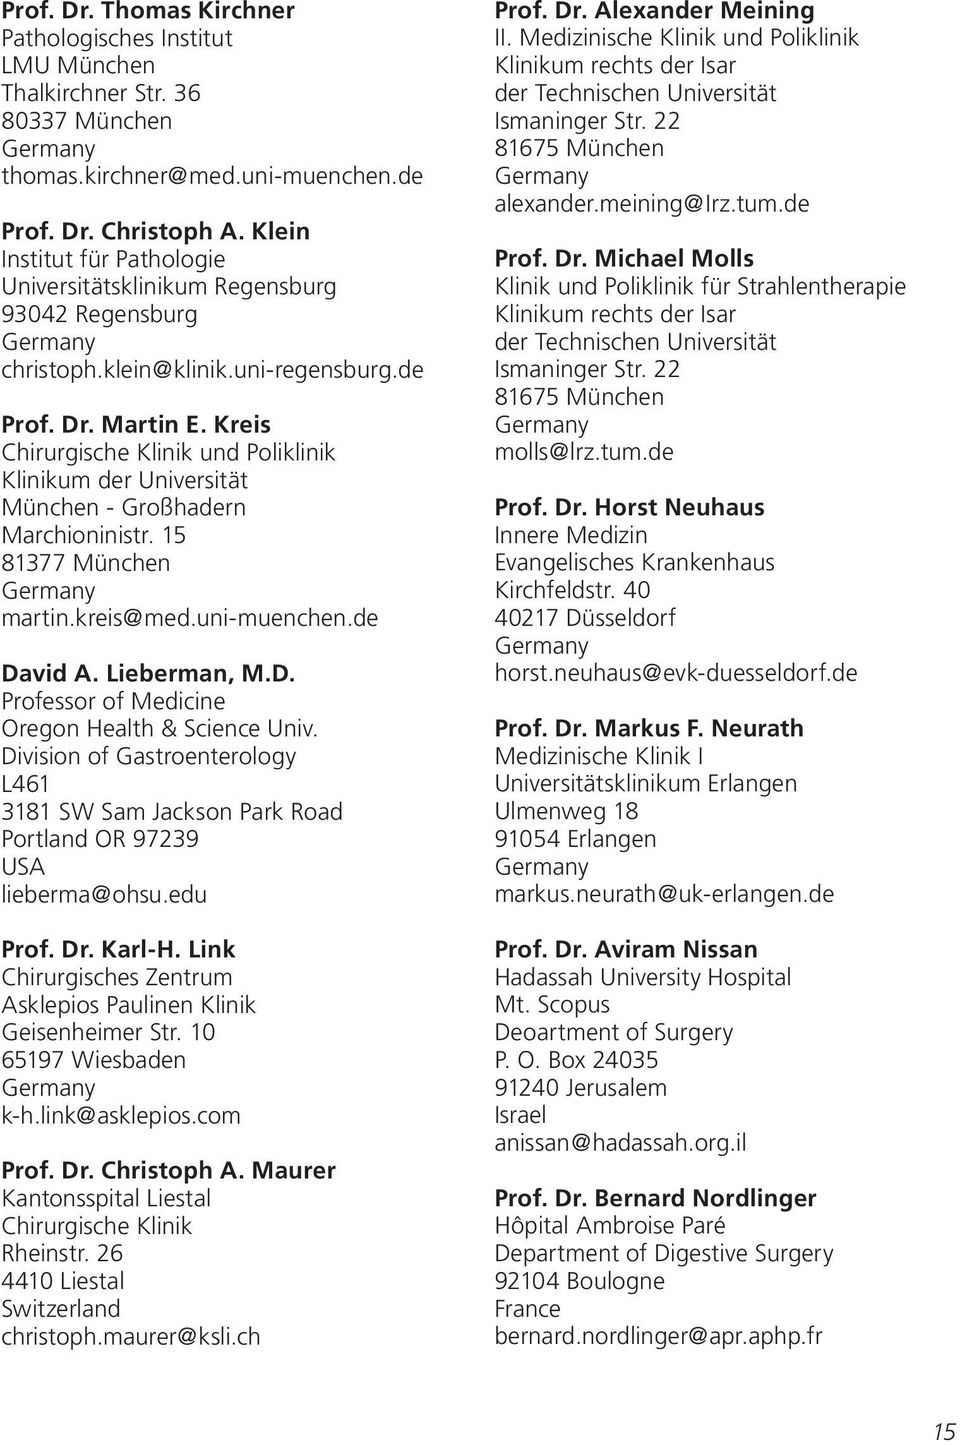 Kreis Chirurgische Klinik und Poliklinik Klinikum der Universität München - Großhadern Marchioninistr. 15 81377 München martin.kreis@med.uni-muenchen.de Da